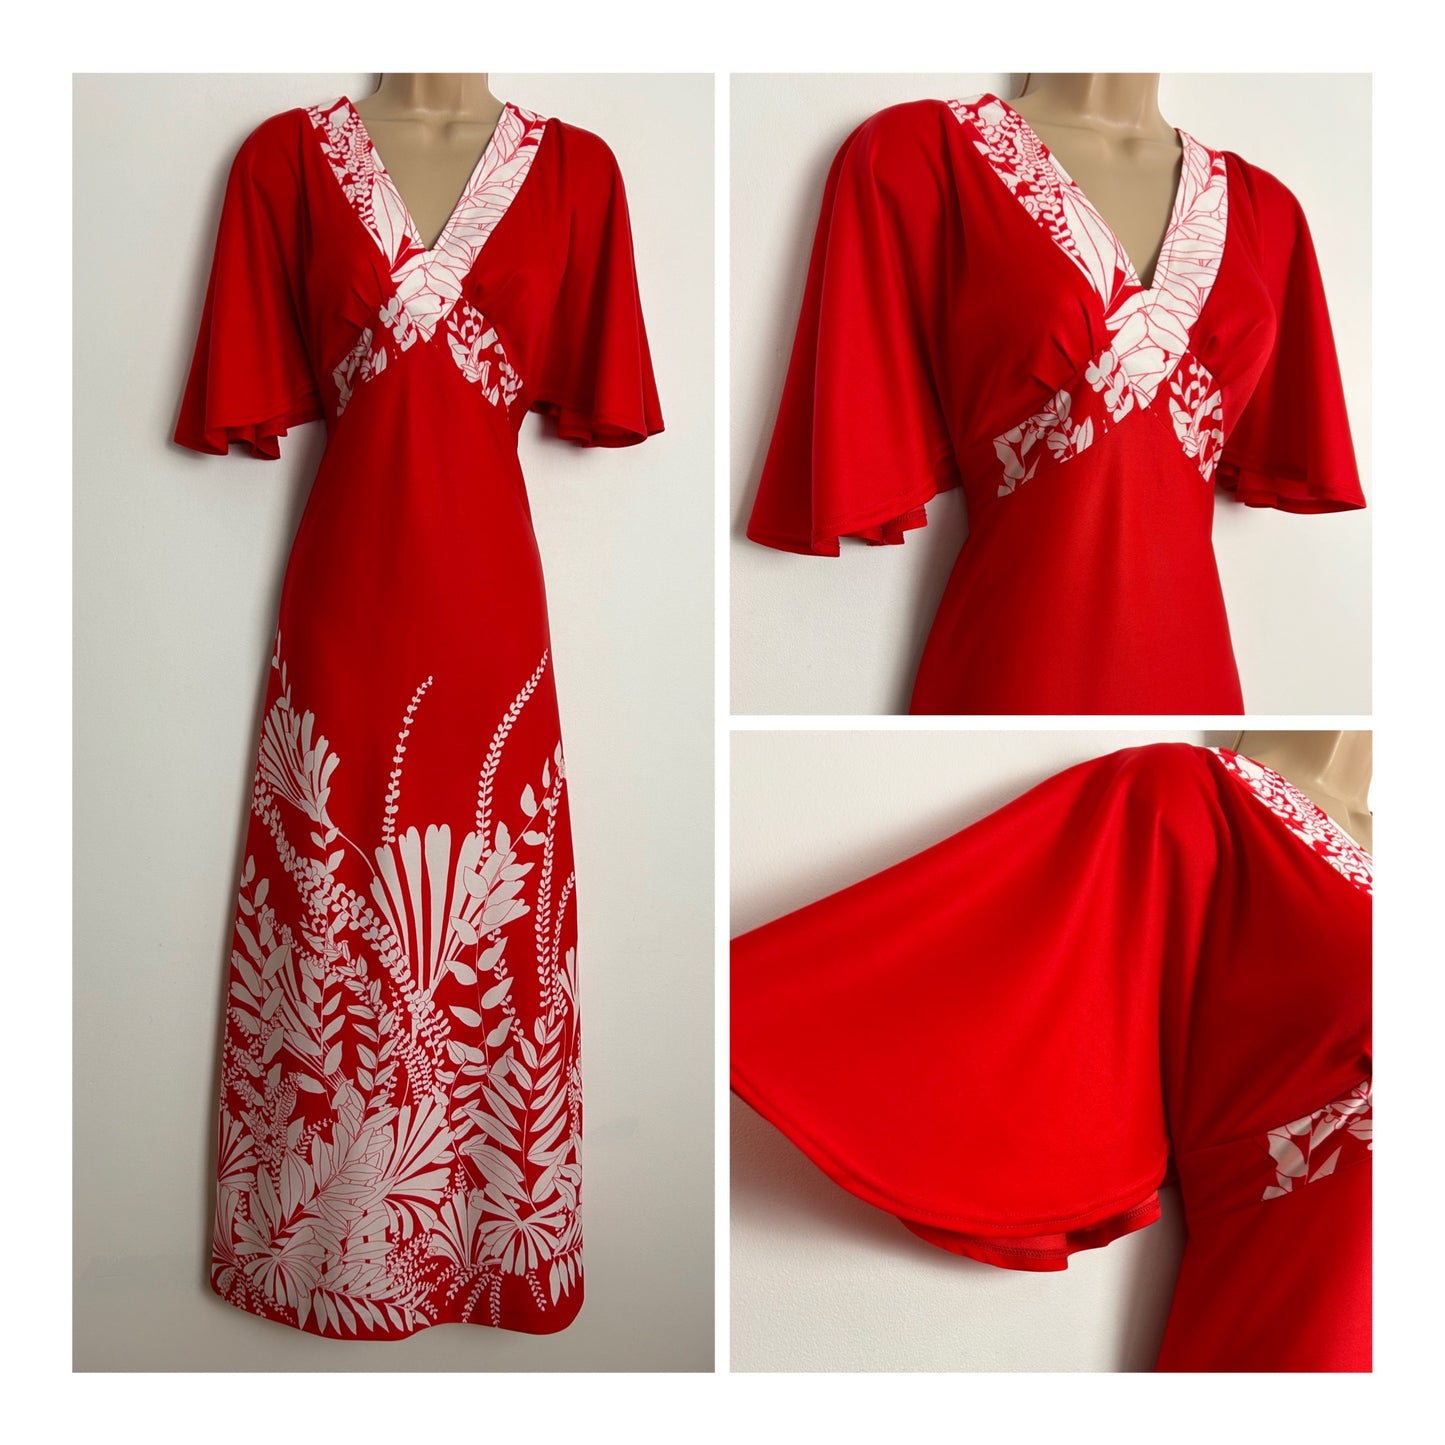 Vintage 1970s TIFFANY UK Size 8 Red & White Leaf Print Flared Short Sleeve Boho Maxi Dress